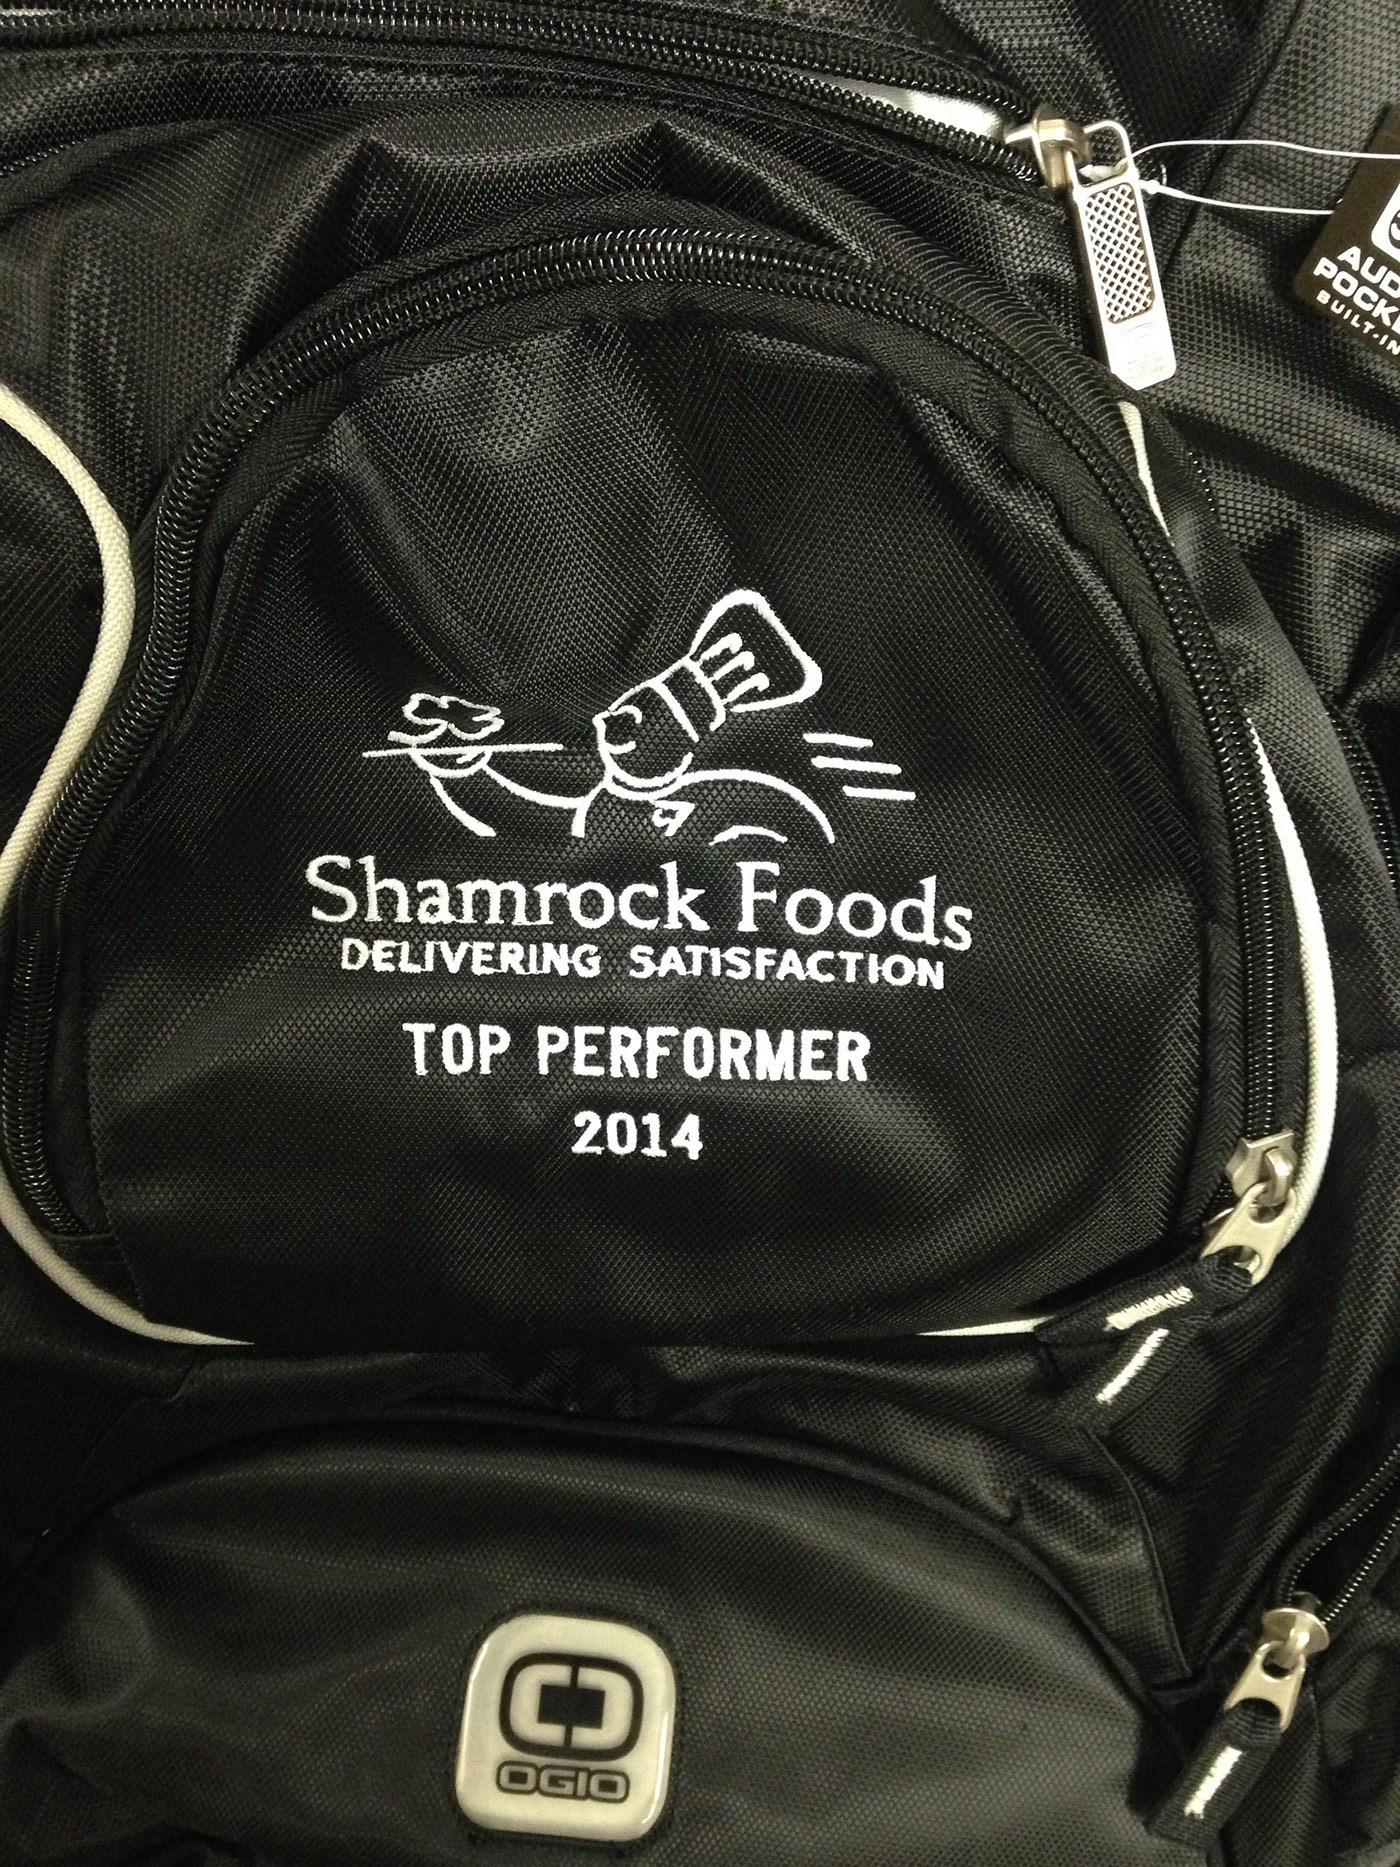 Shamrock foods backpack